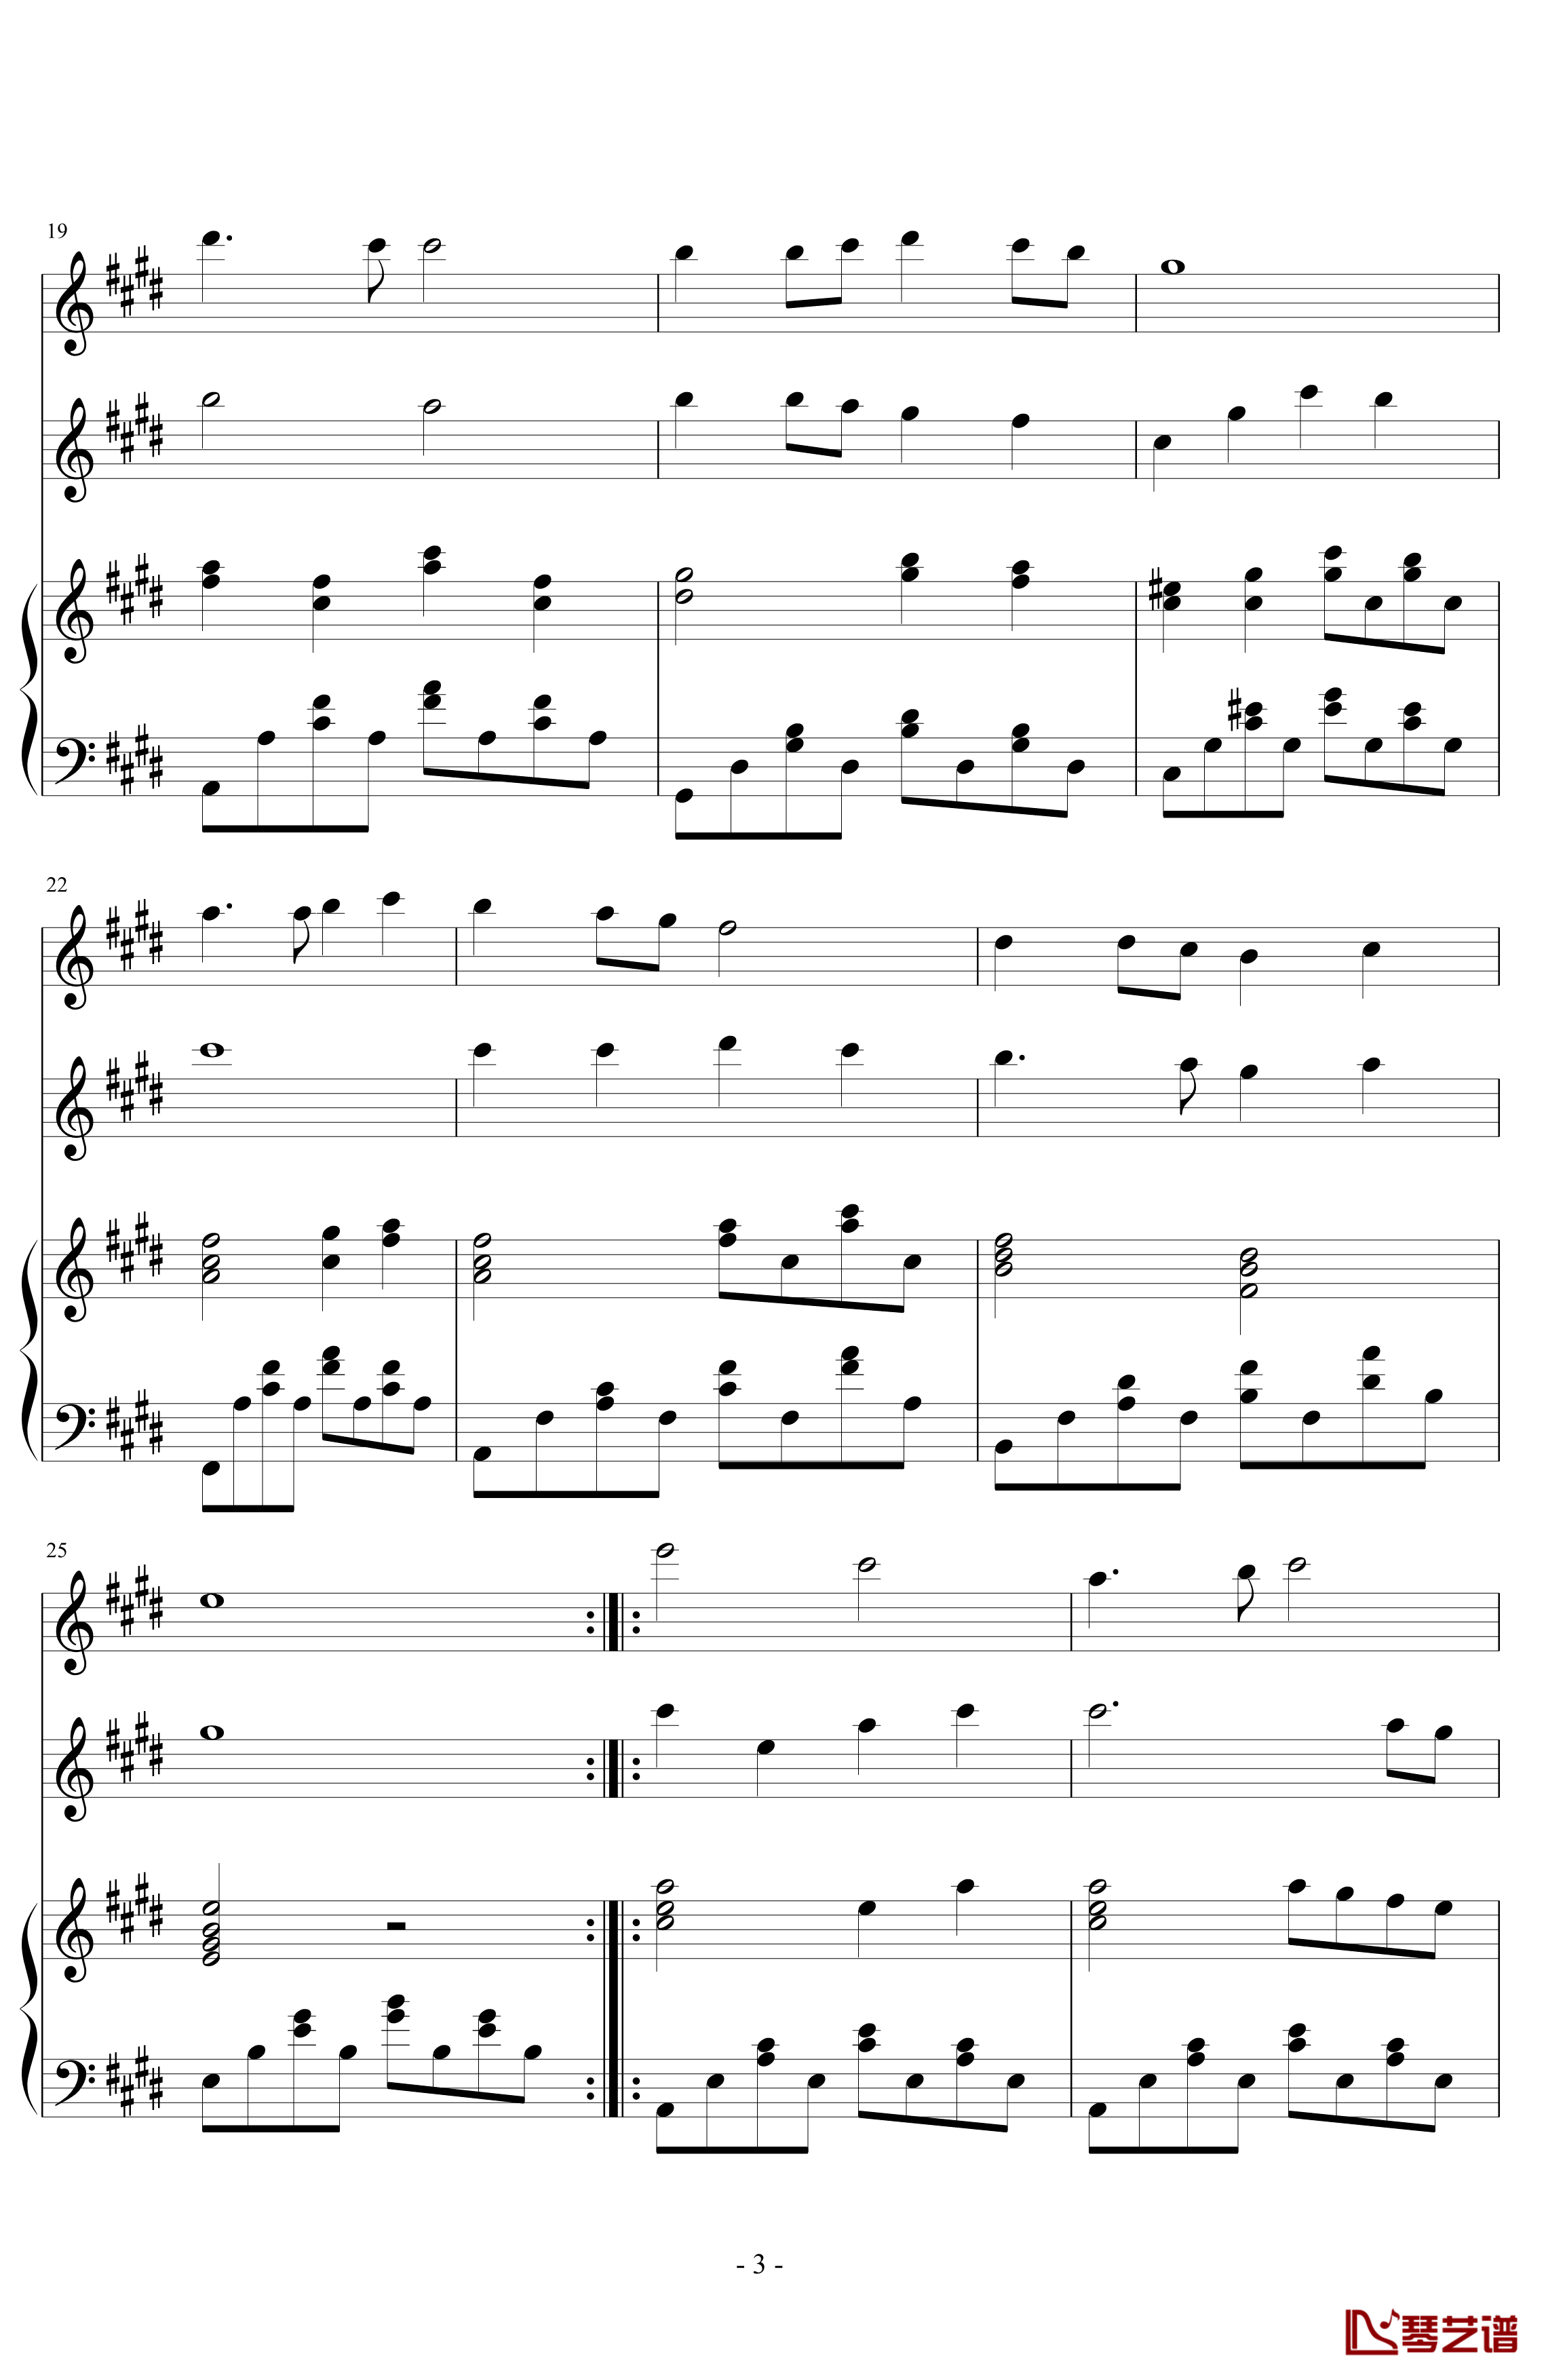 同一首歌钢琴谱-小型伴奏谱兼演奏谱-毛阿敏3